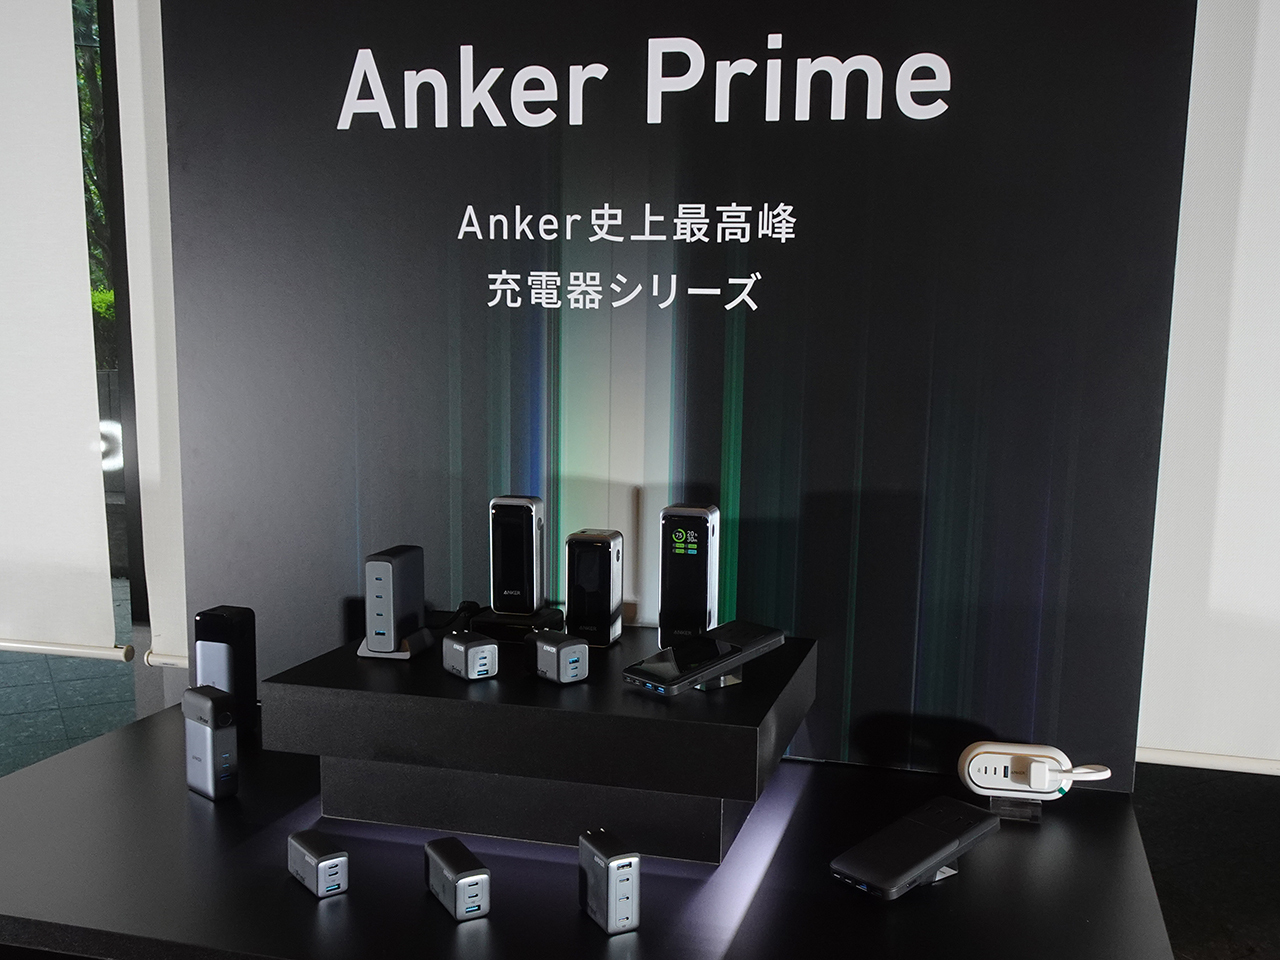 充電器シリーズ「Anker Prime」を発表